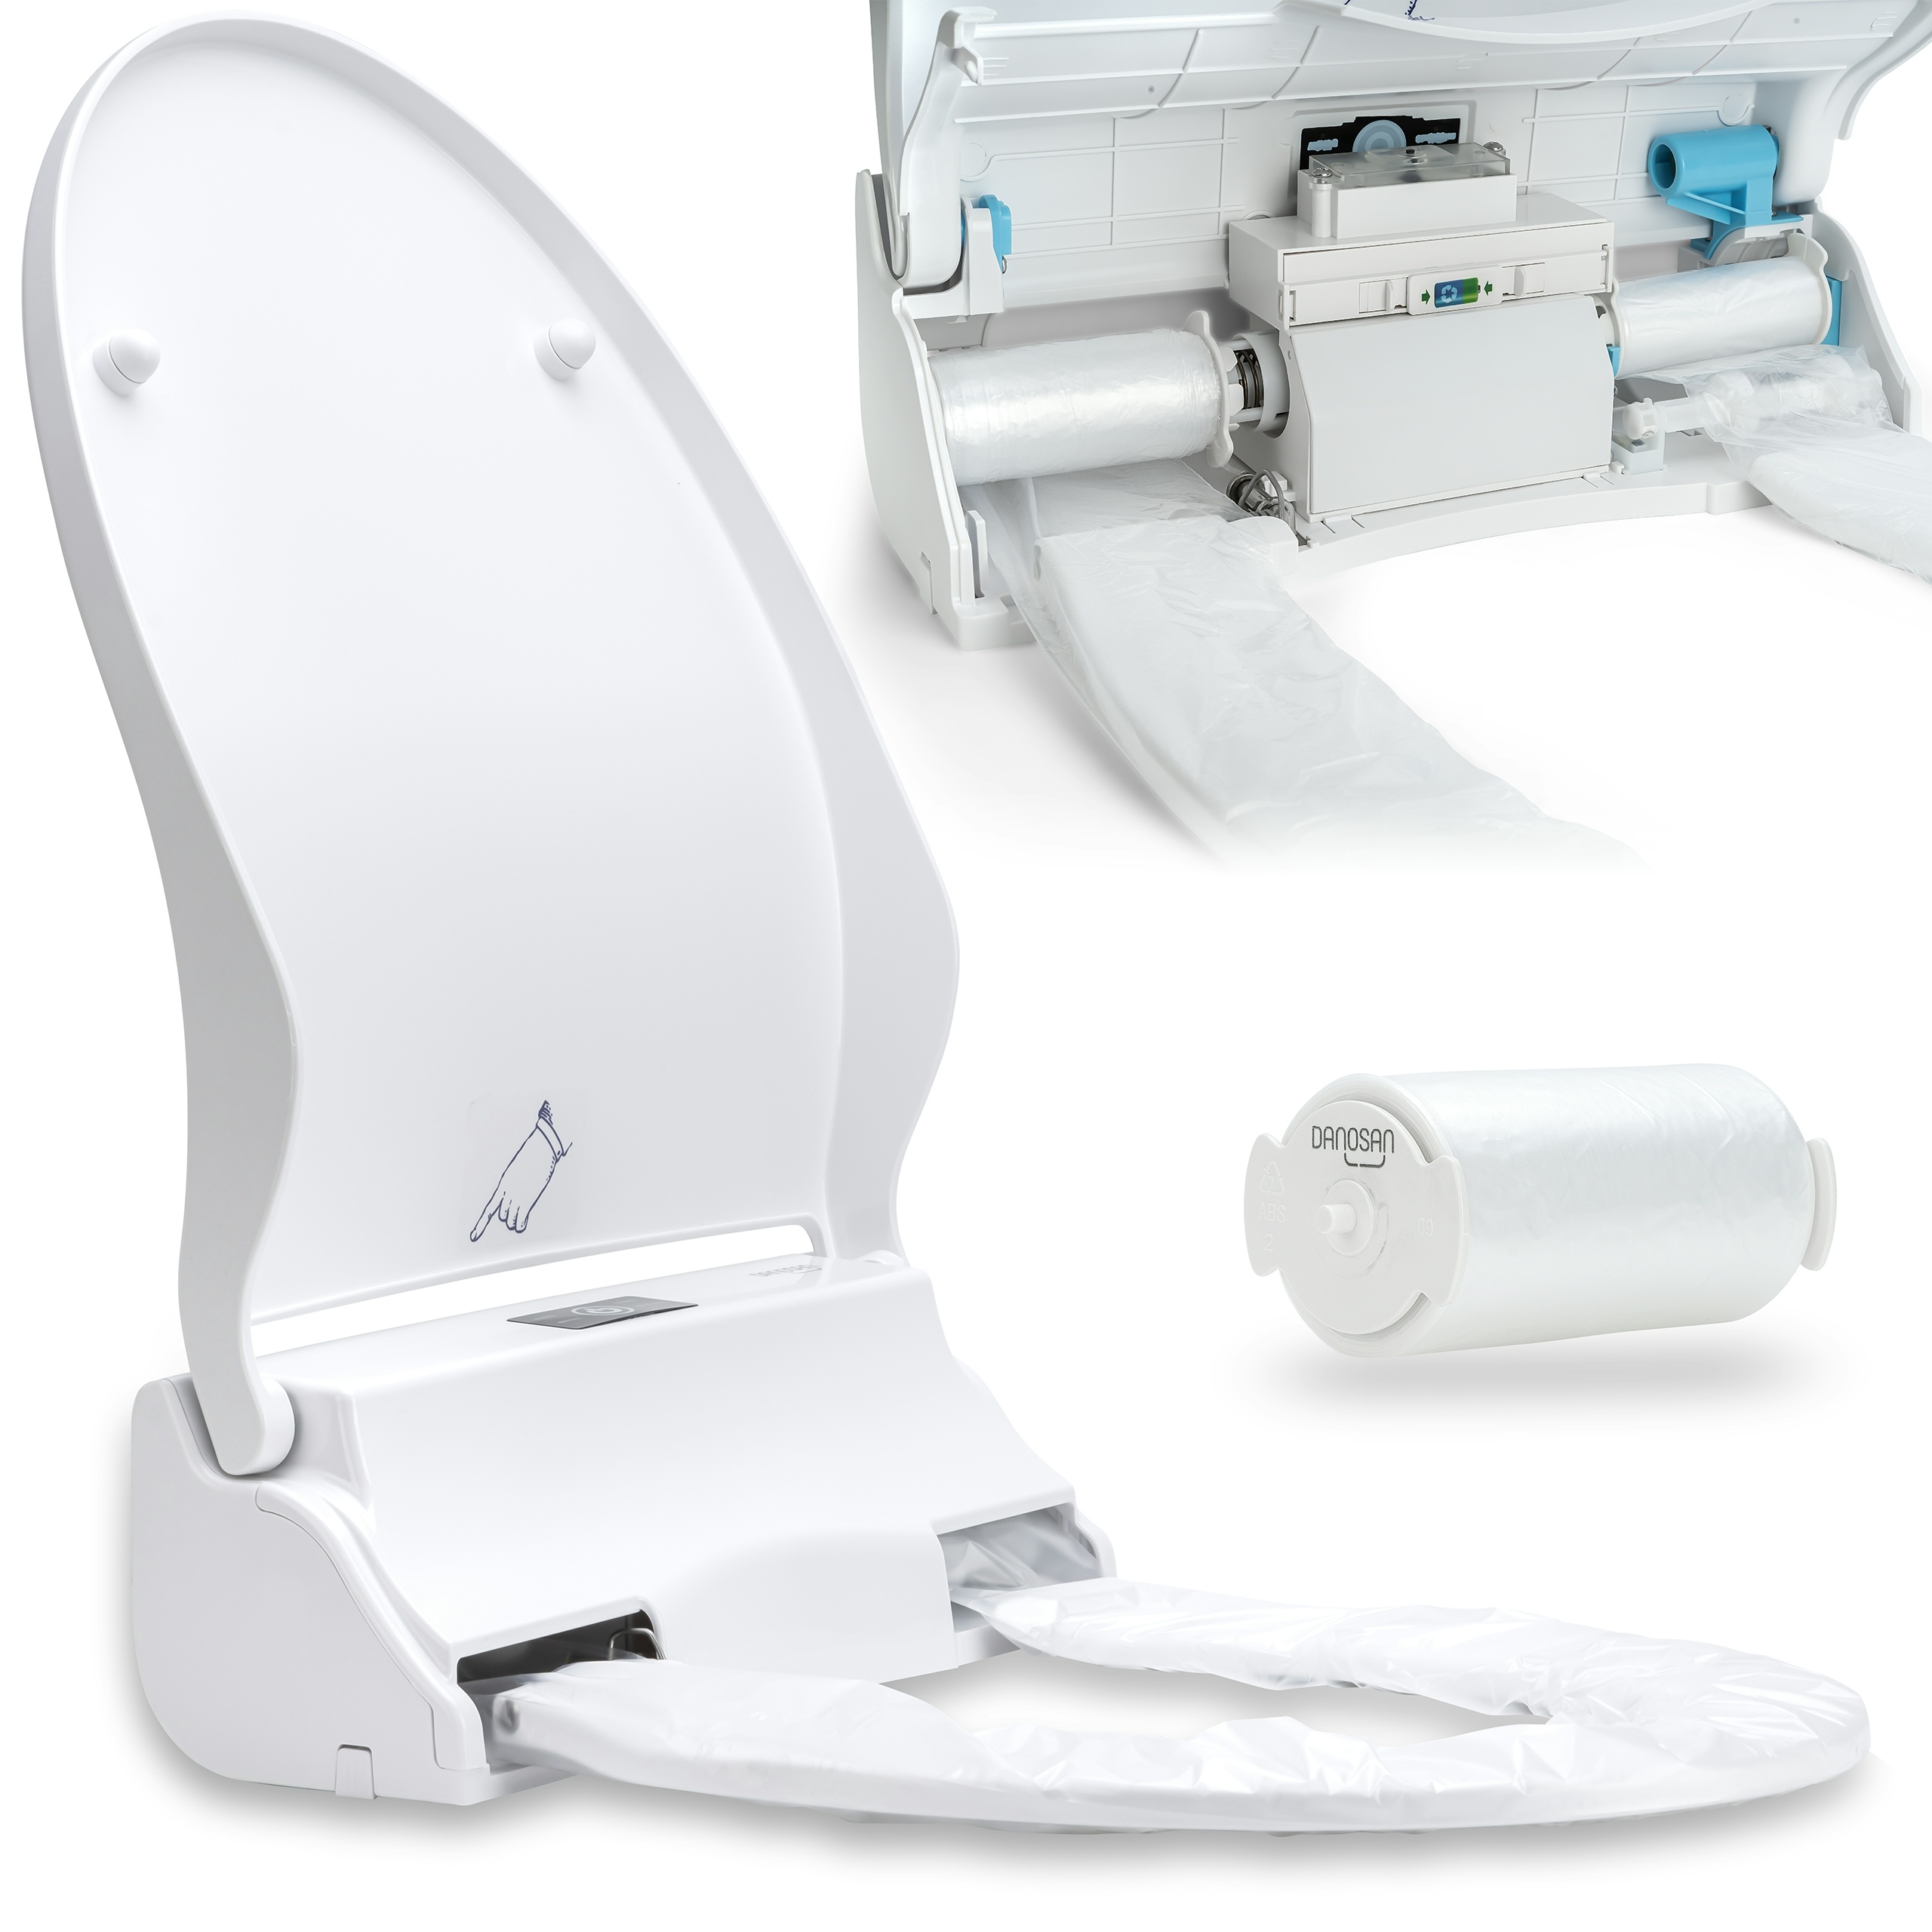 GVS DANOSAN Hygiene-WC-Sitz mit UV-Desinfektion, Schutz vor Viren und Keimen